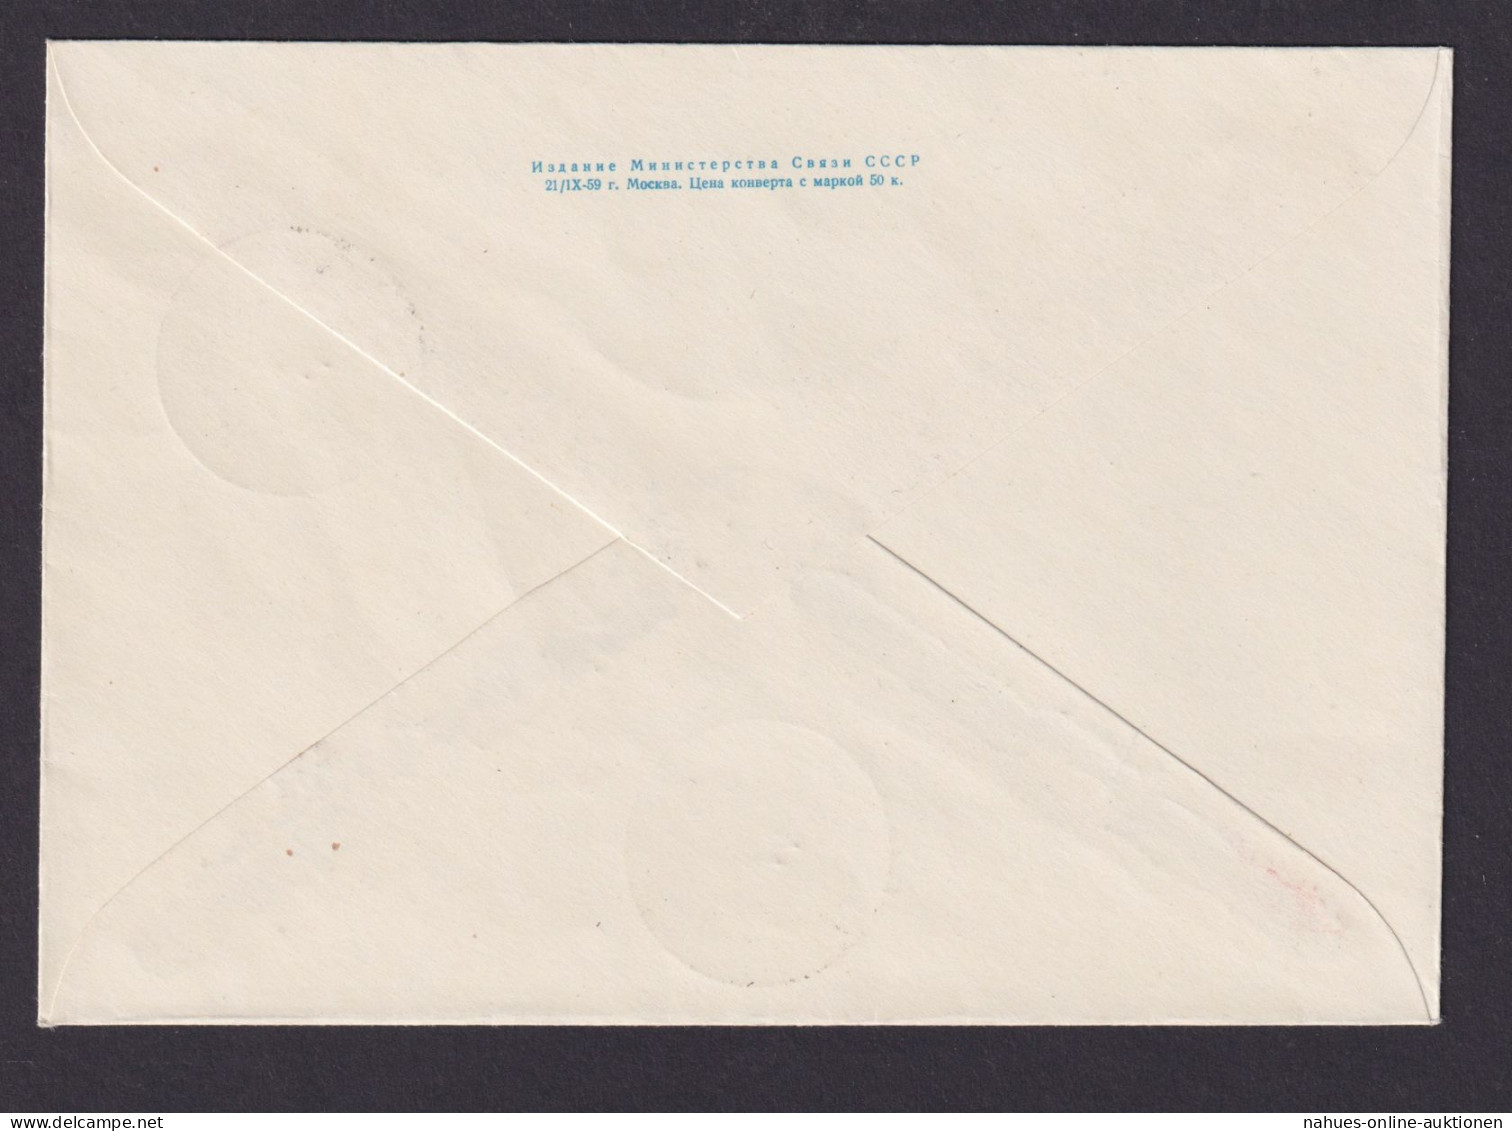 Sowjetunion Ganzsache Umschlag 40 K. Abb. Schiff Schiffahrt 187 II B Druckdatum - Covers & Documents